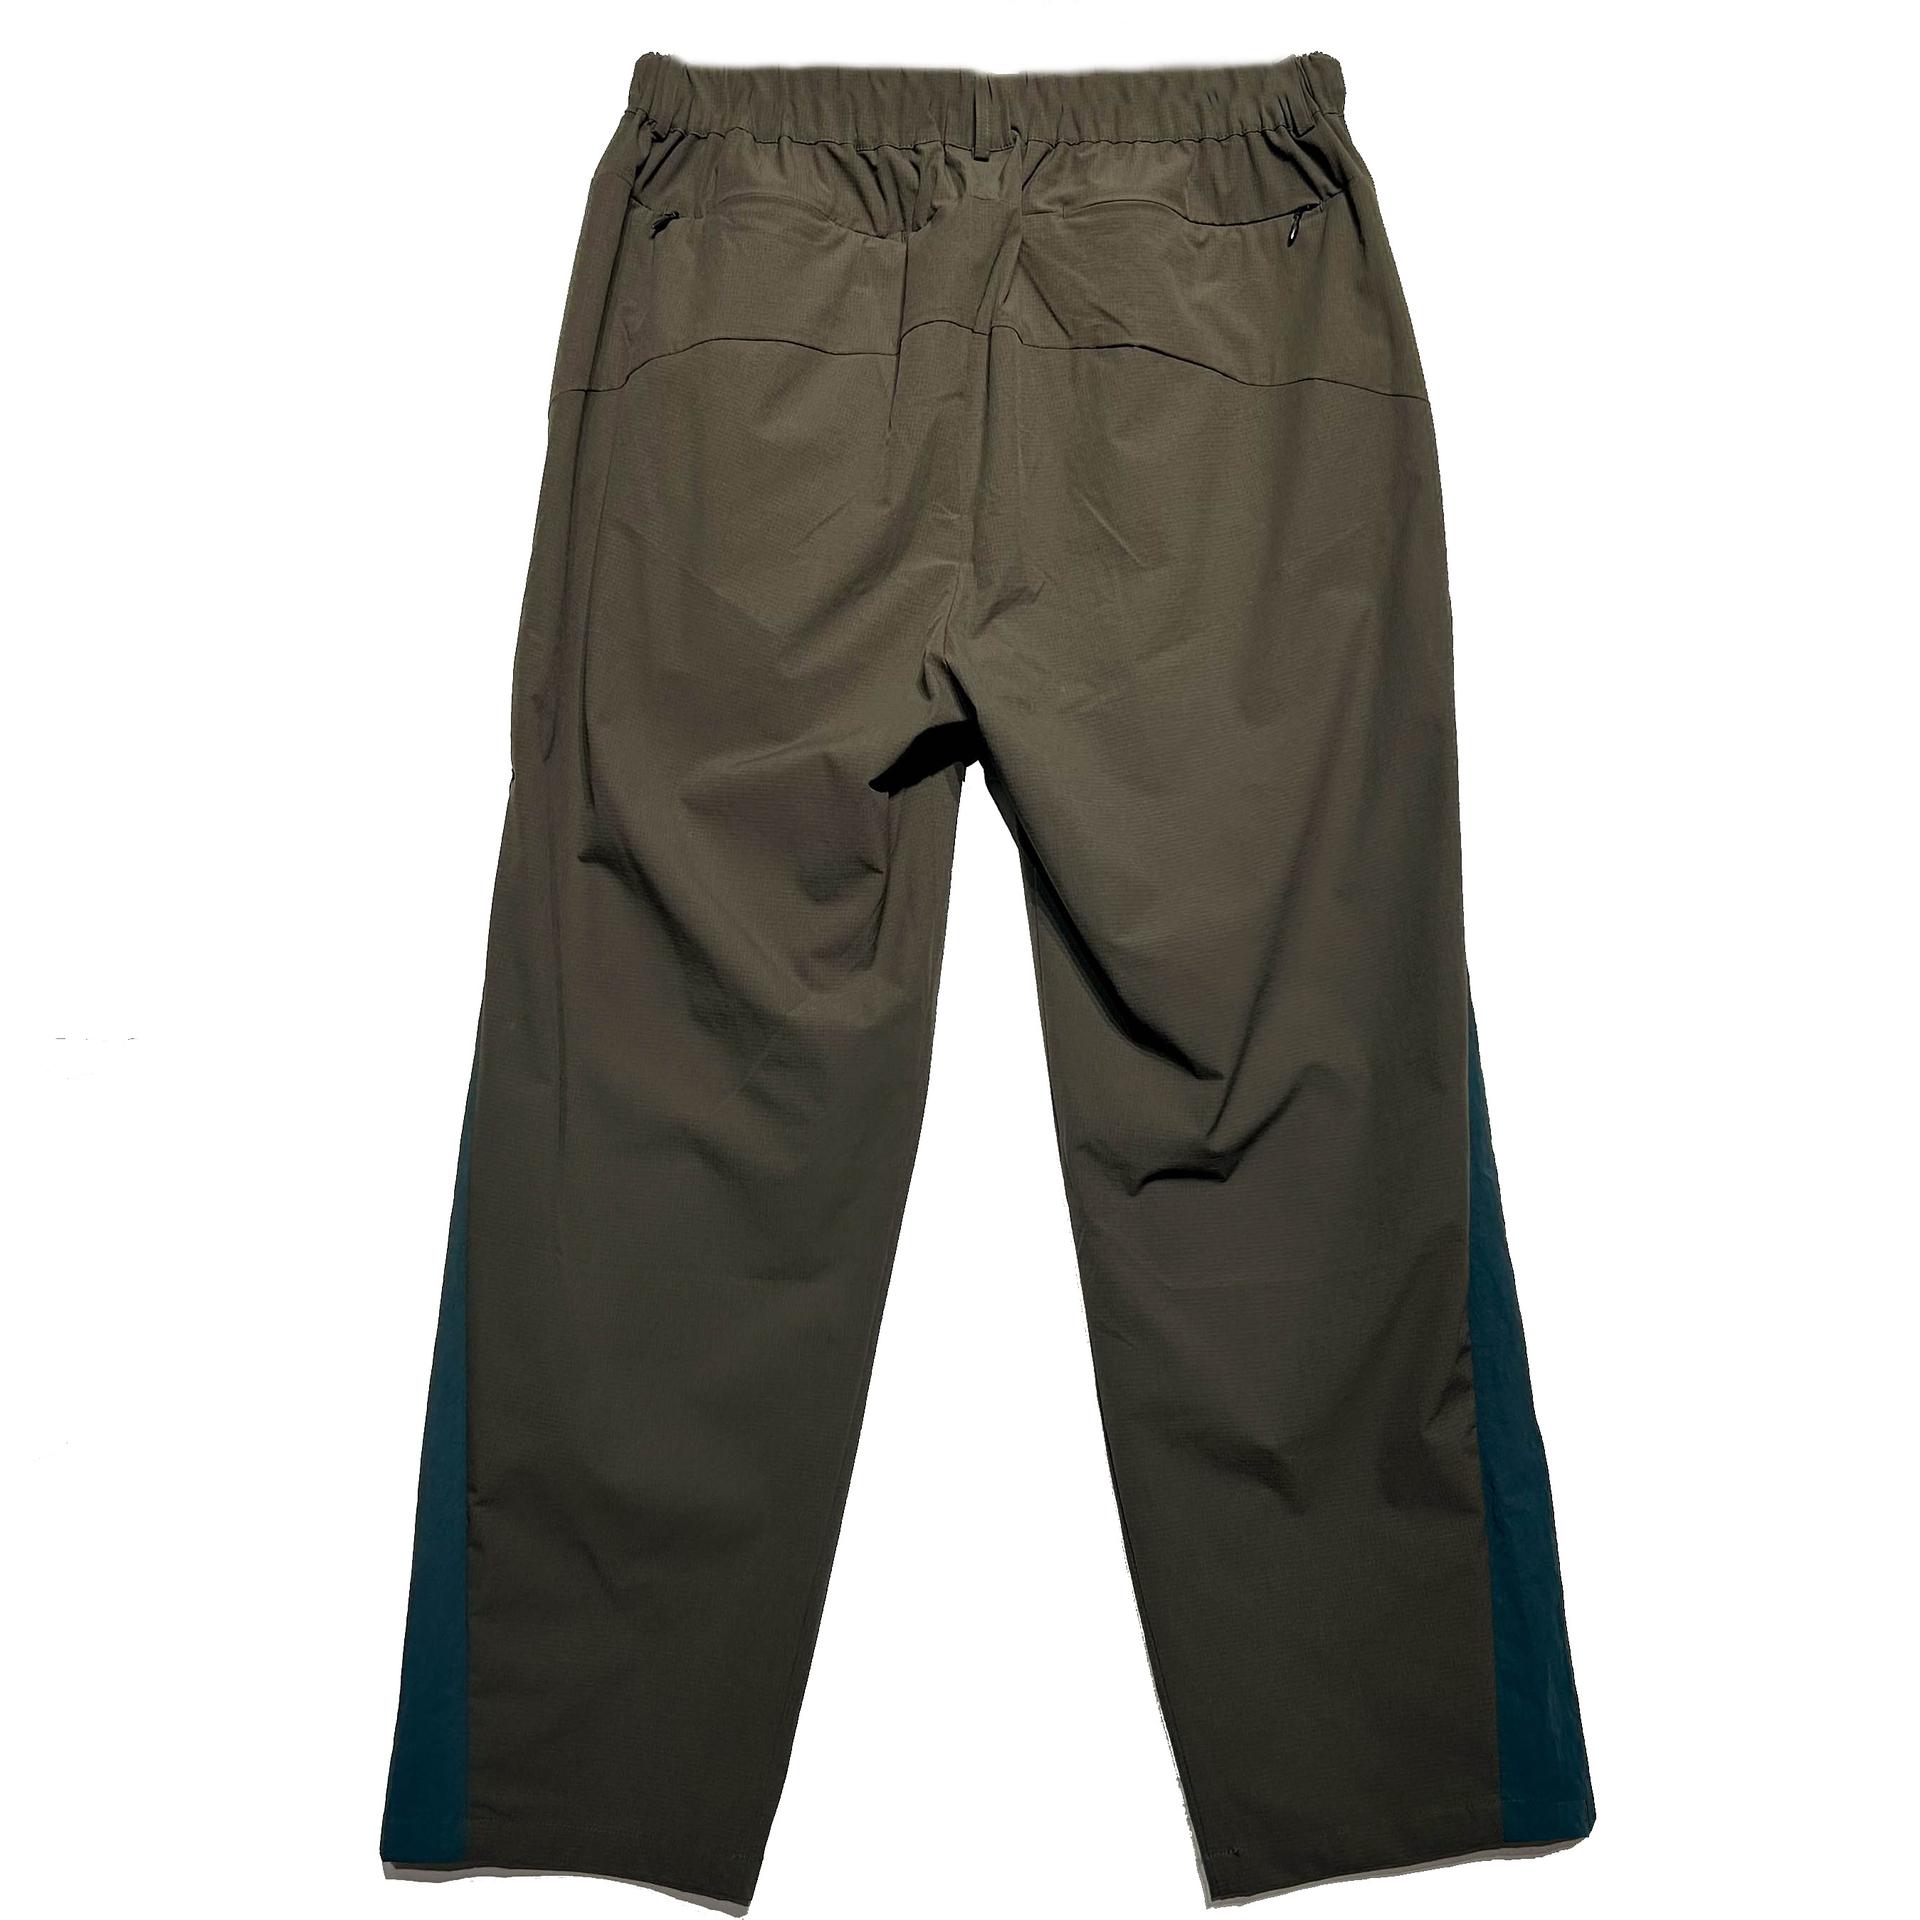 YamaGuest LP06 Unisex Breathable Trousers (GRX)